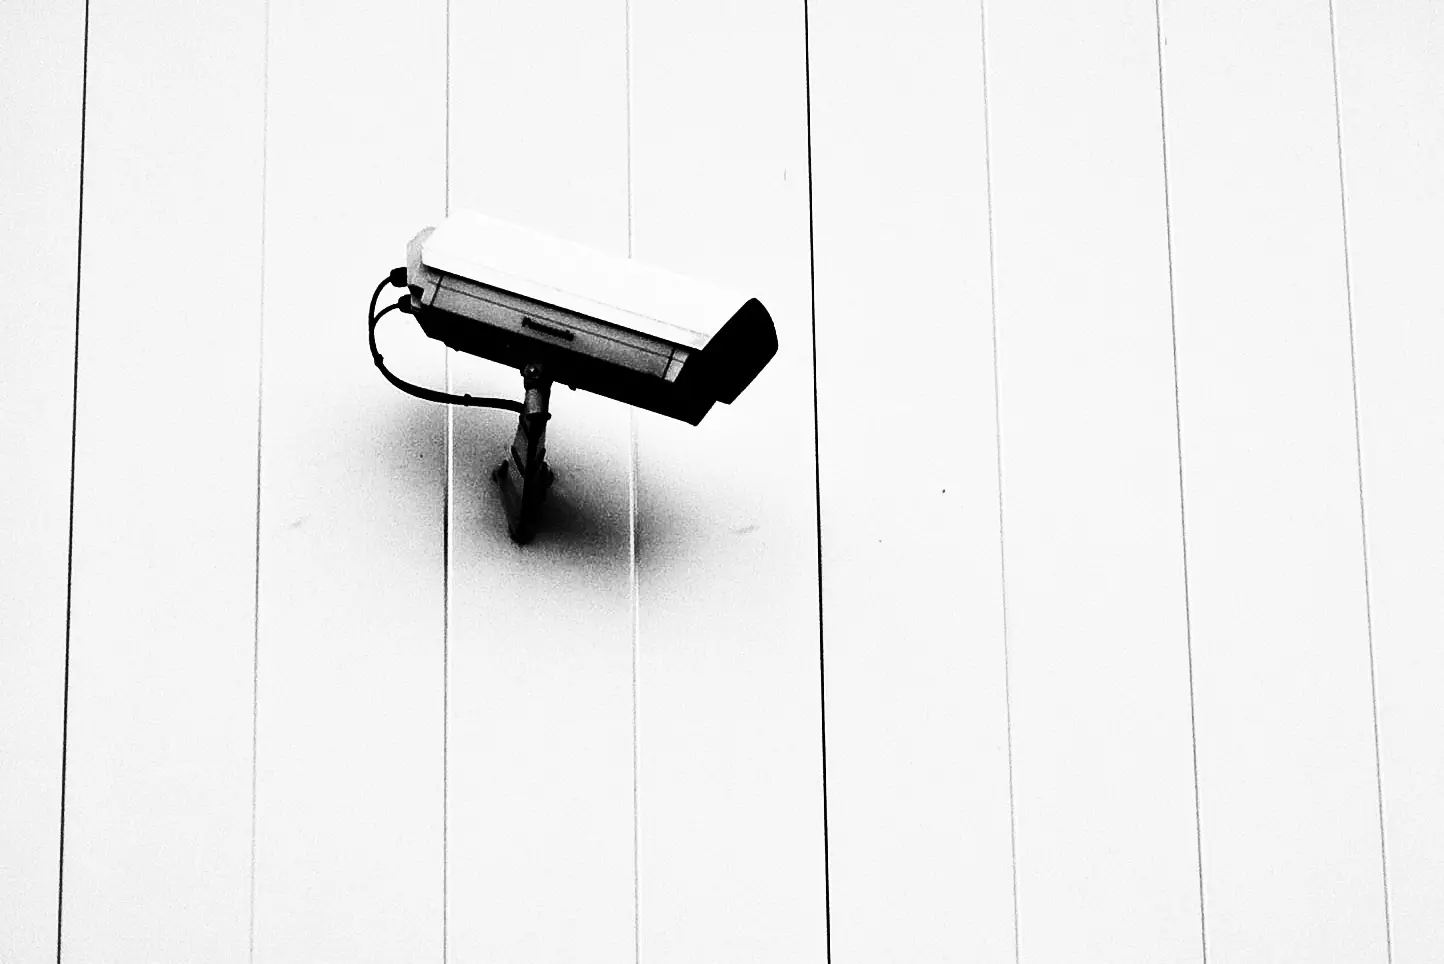 كاميرات المراقبة